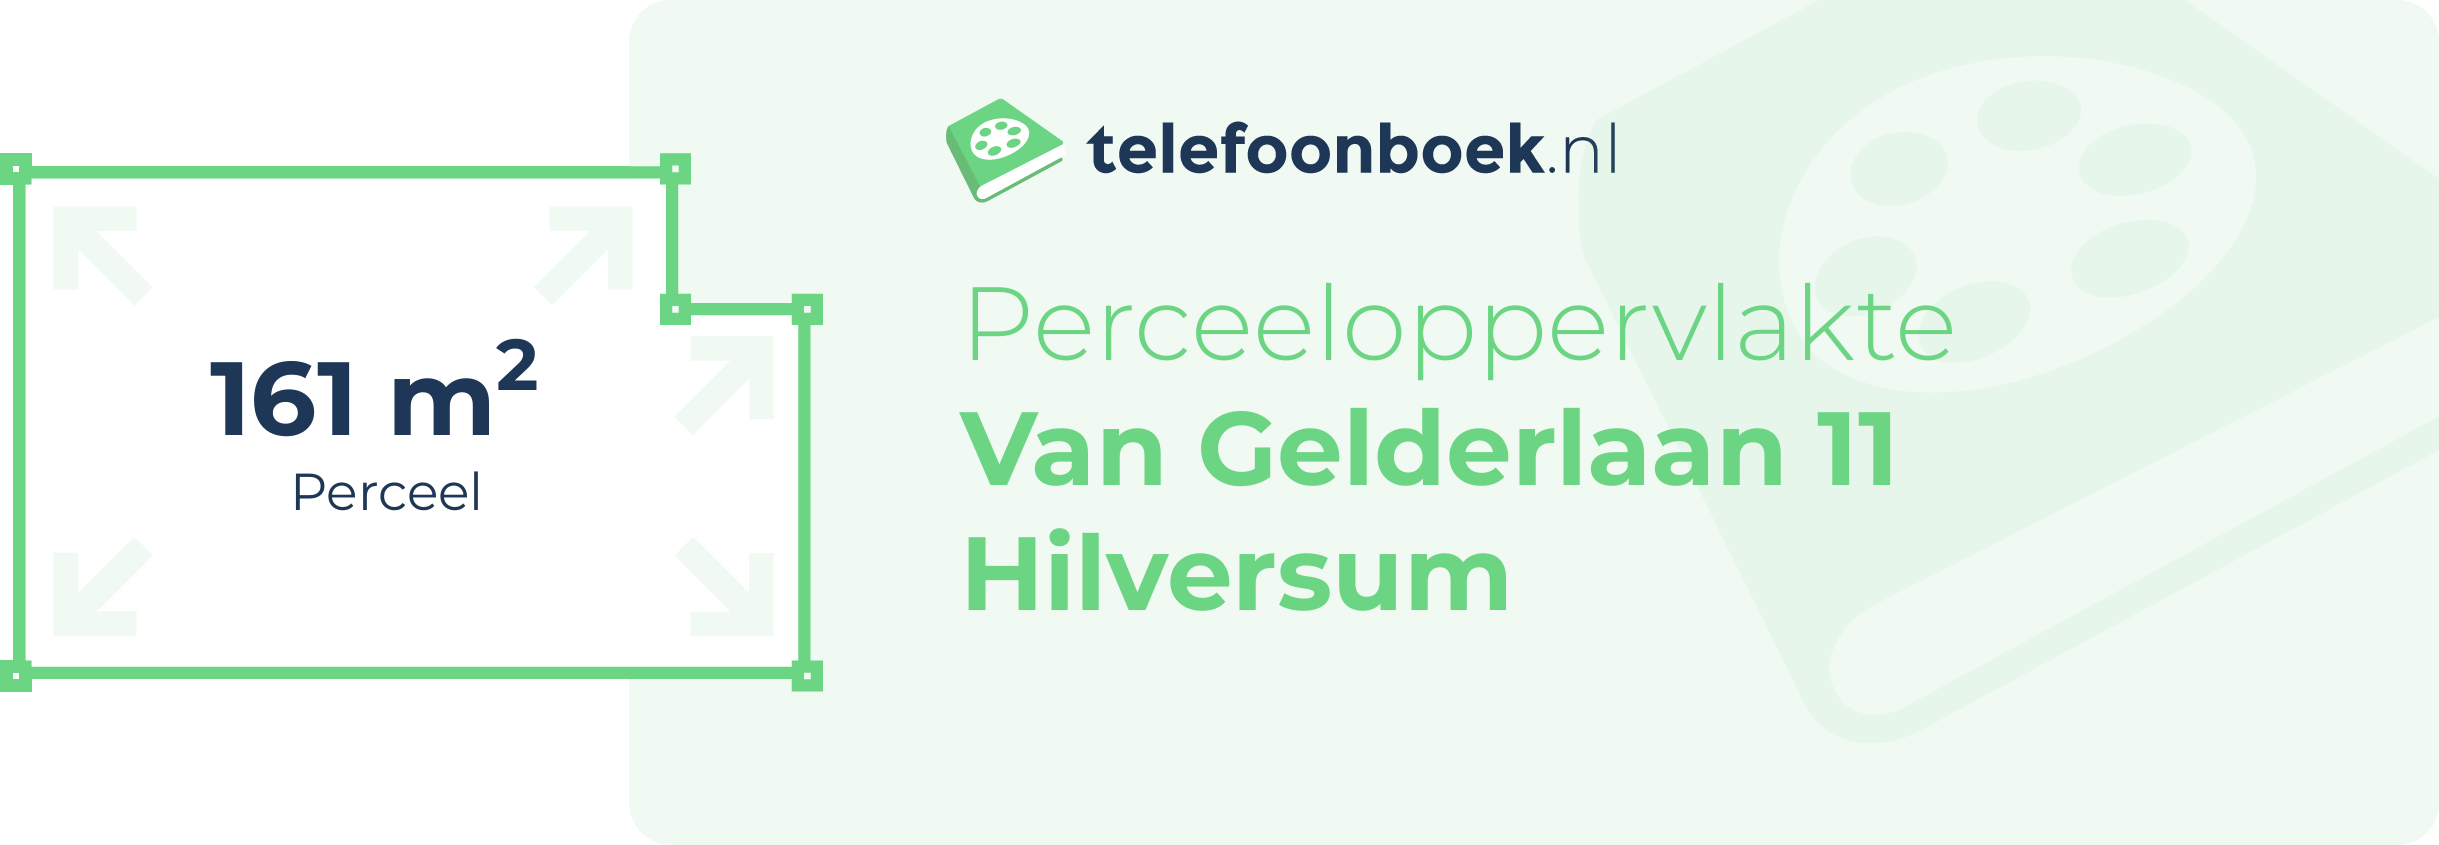 Perceeloppervlakte Van Gelderlaan 11 Hilversum